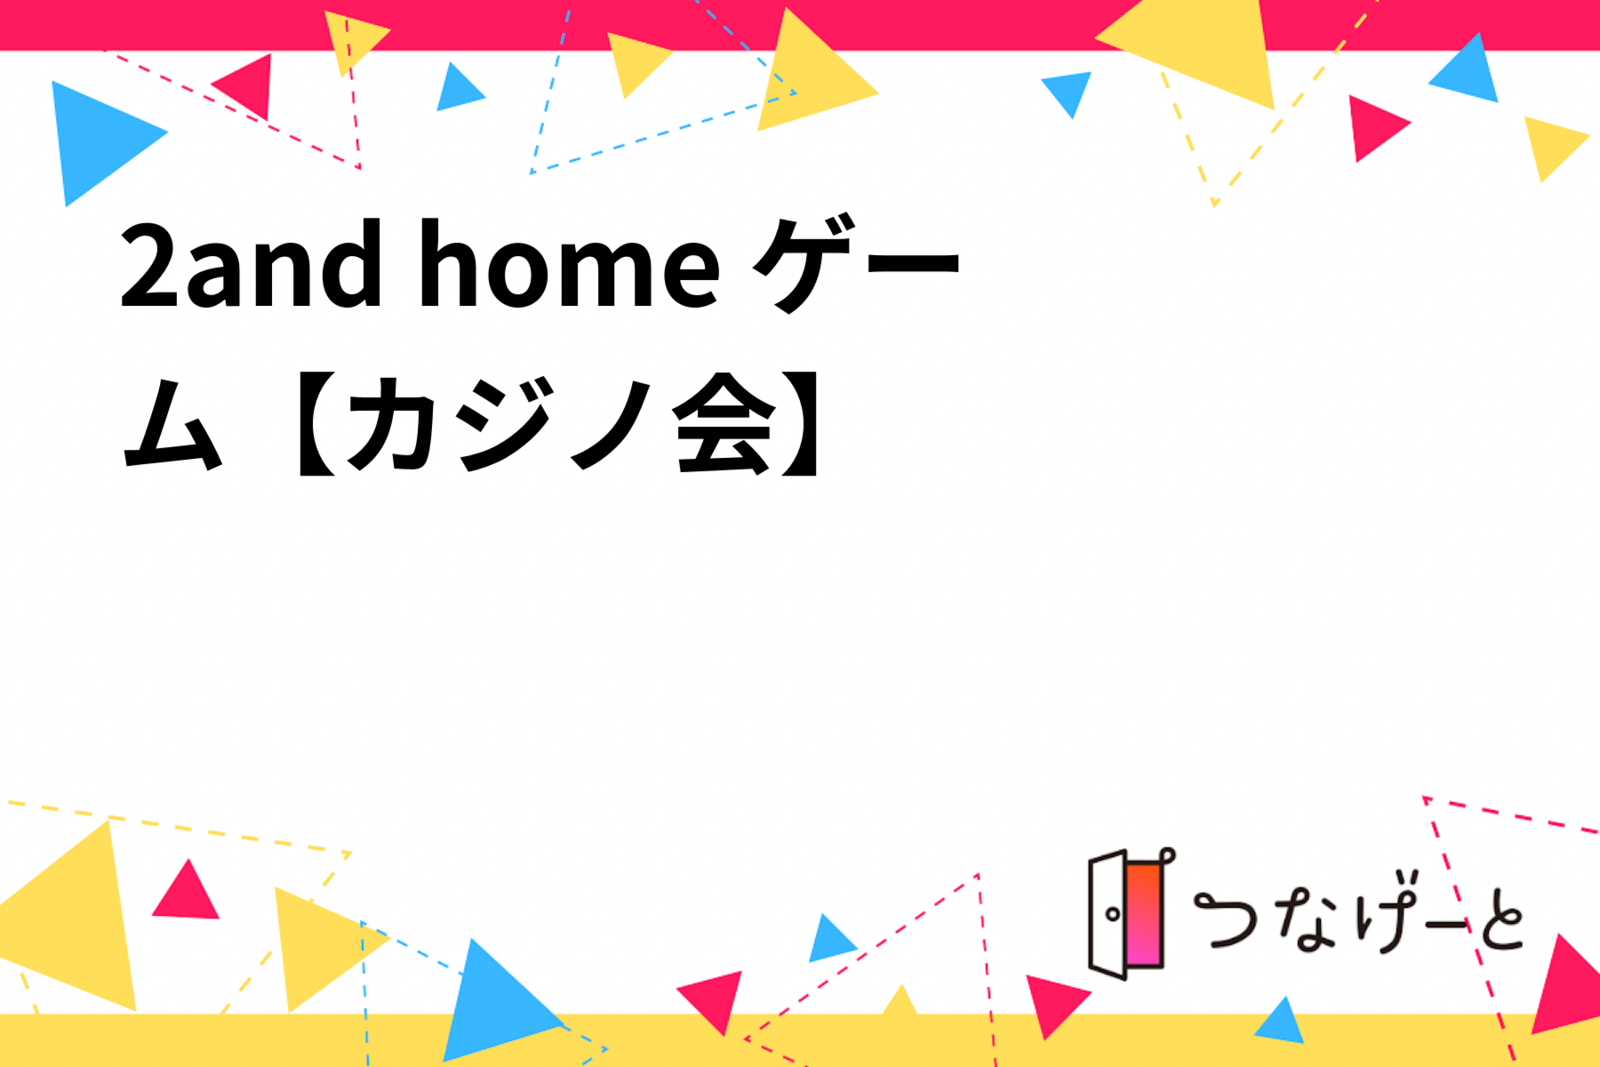 2and home ゲーム【カジノ会】